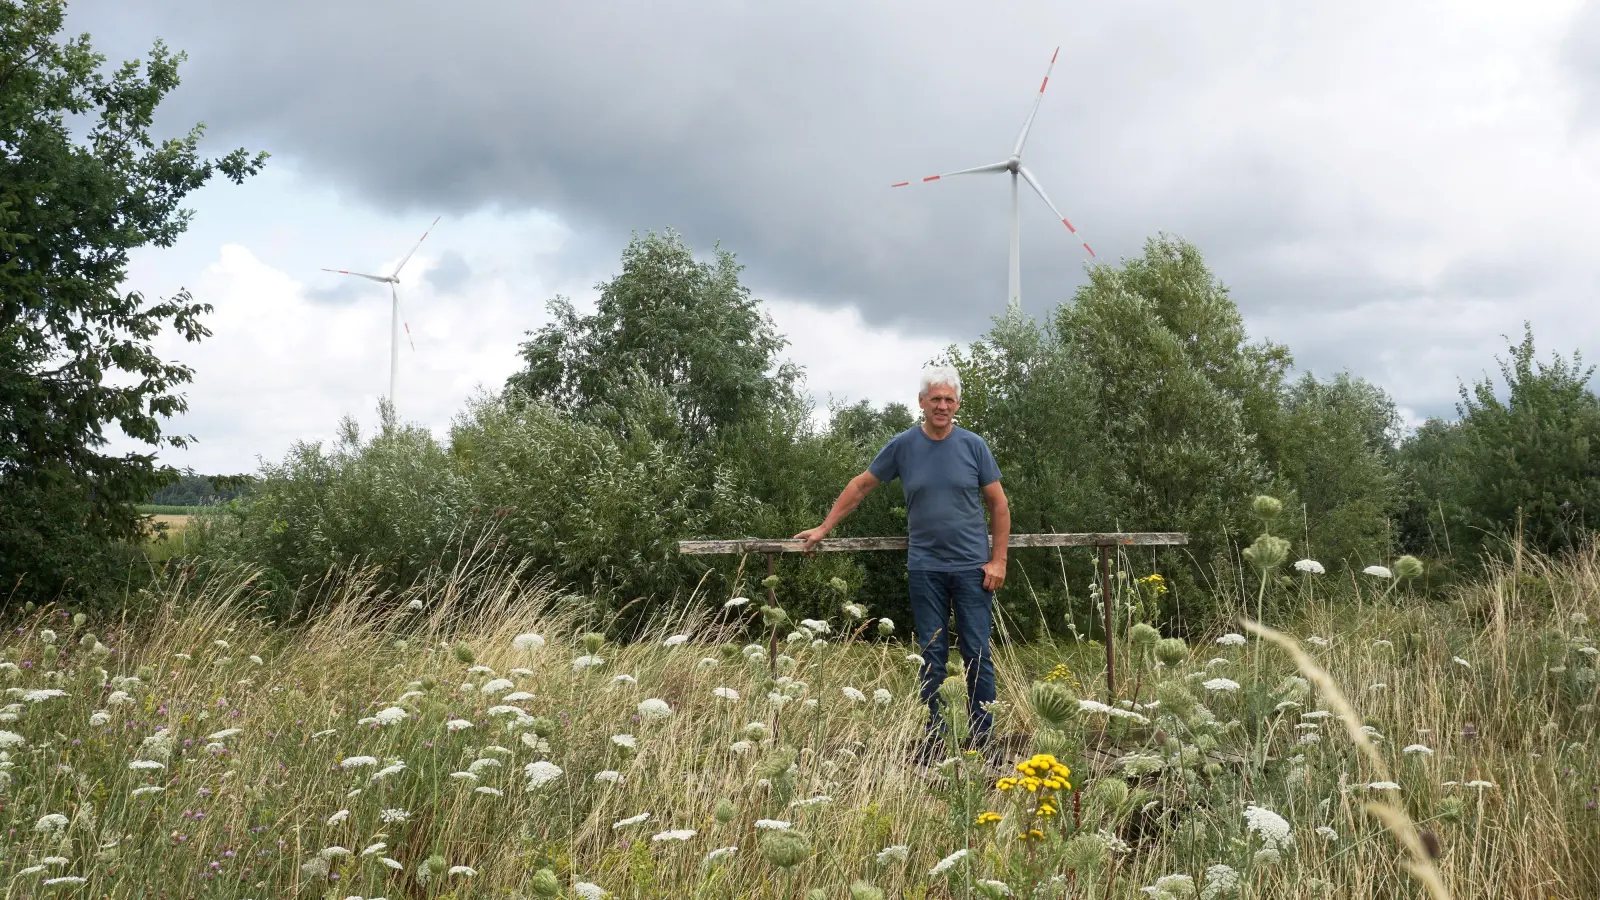 Johannes Maibom ist einer der Initiatoren des Energiedorfs Mausdorf. Im dort zwischen den Windrädern angelegten Biotopverbund soll zusätzlich noch eine 13-MW-Photovoltaik-Anlage errichtet werden. Doch Bundes- und Landesrecht erschweren diese Projektpläne. (Foto: Heinz Wraneschitz)